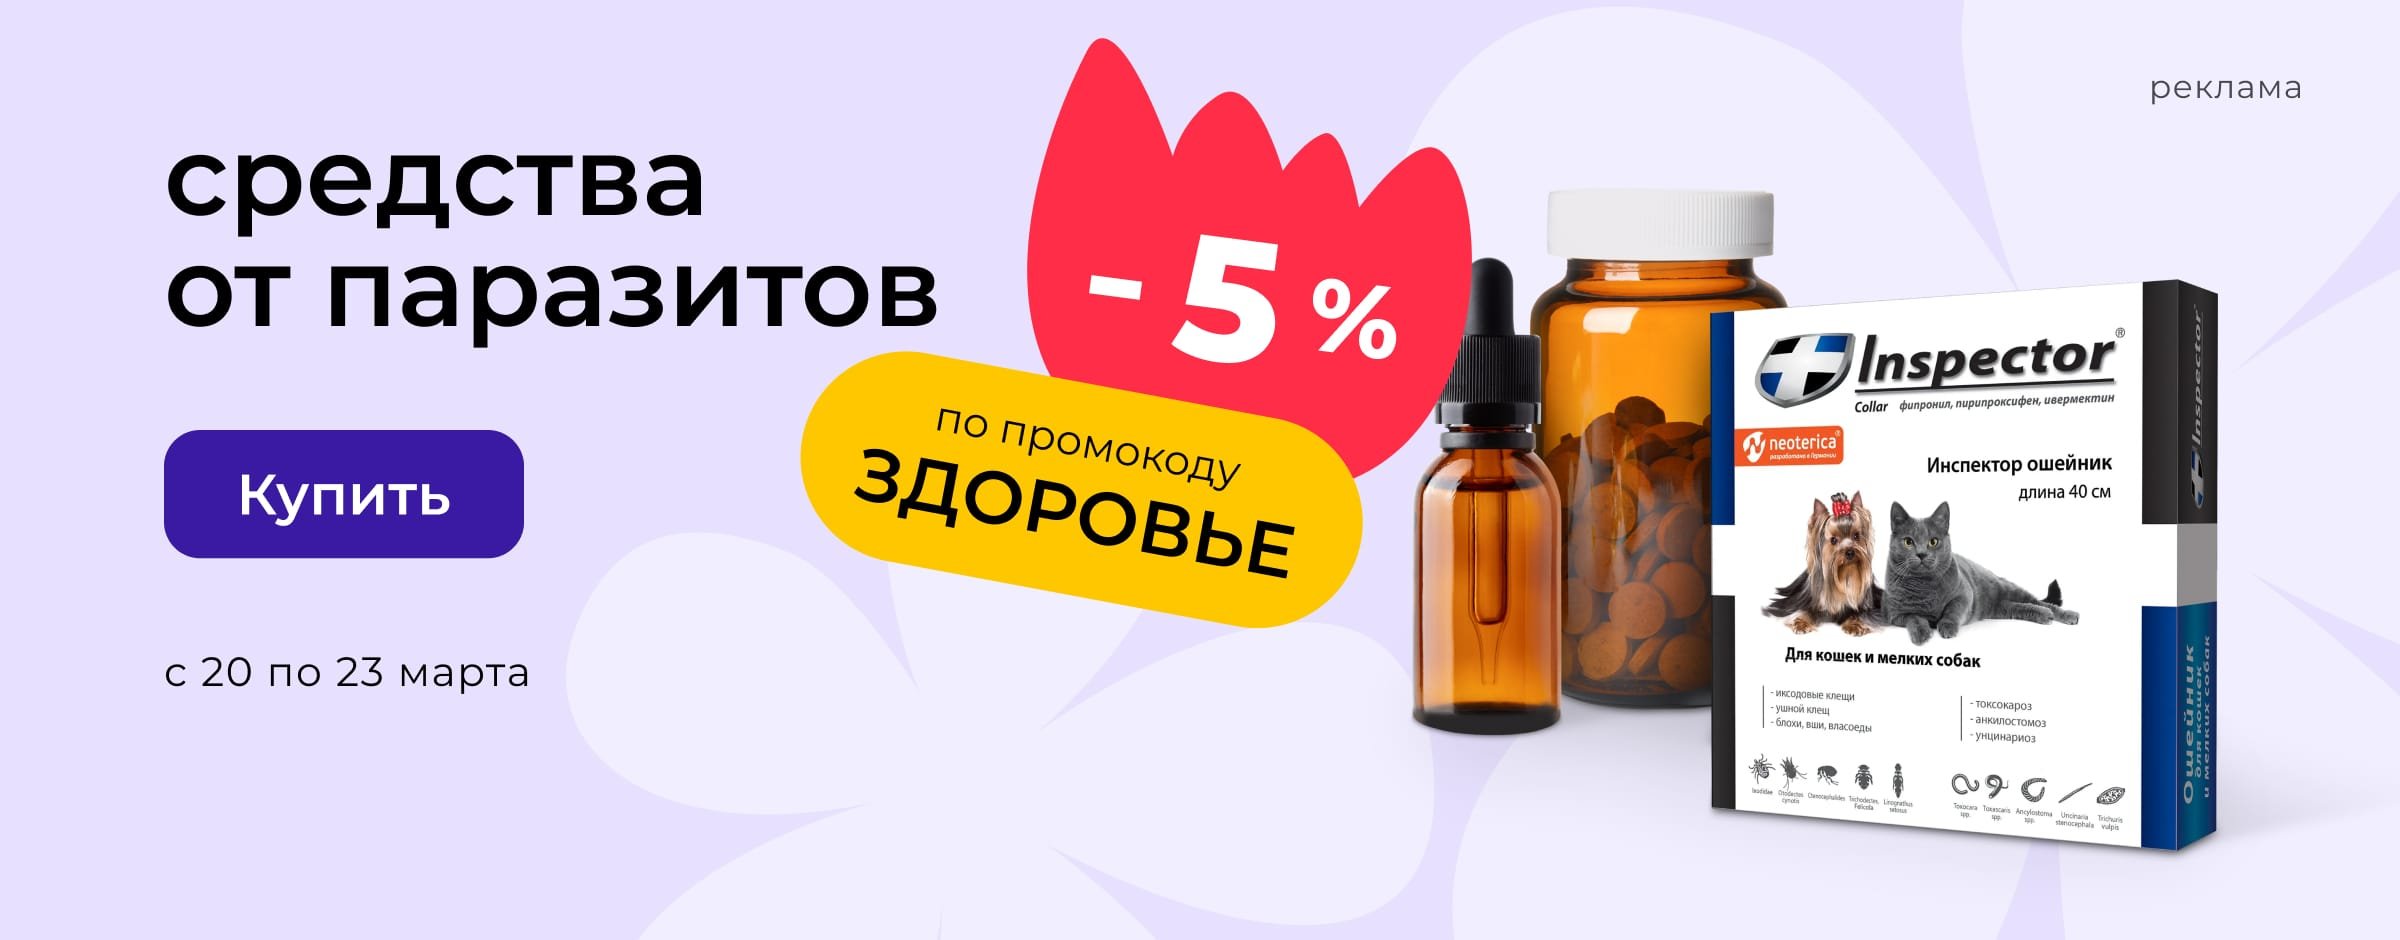 Доп. скидка 5% по промокоду на препараты от паразитов_ЗОО